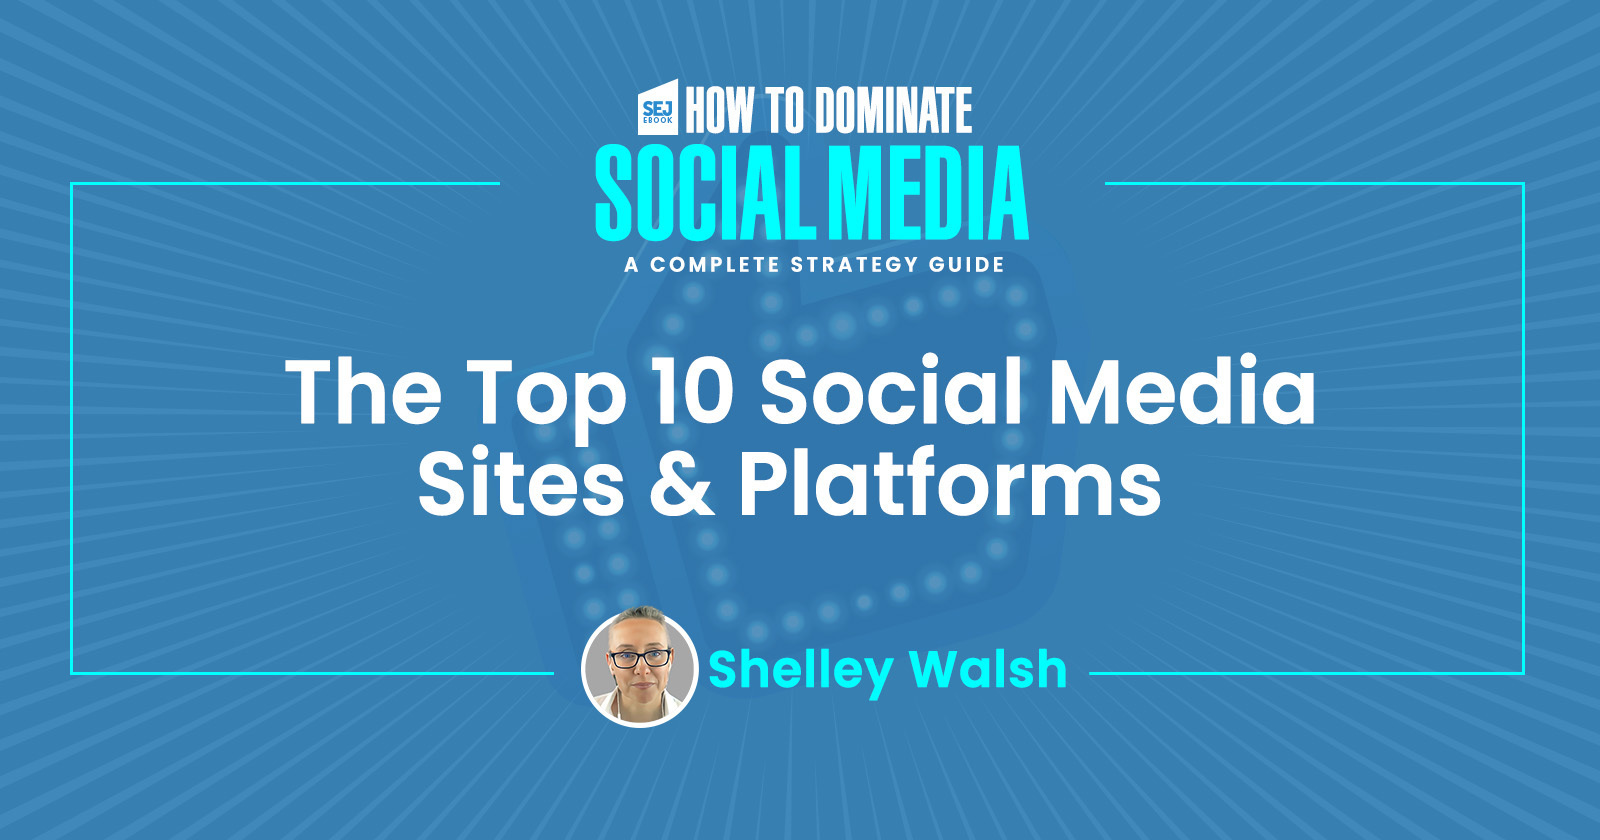 Asalto Hay una necesidad de estante The Top 10 Social Media Sites & Platforms